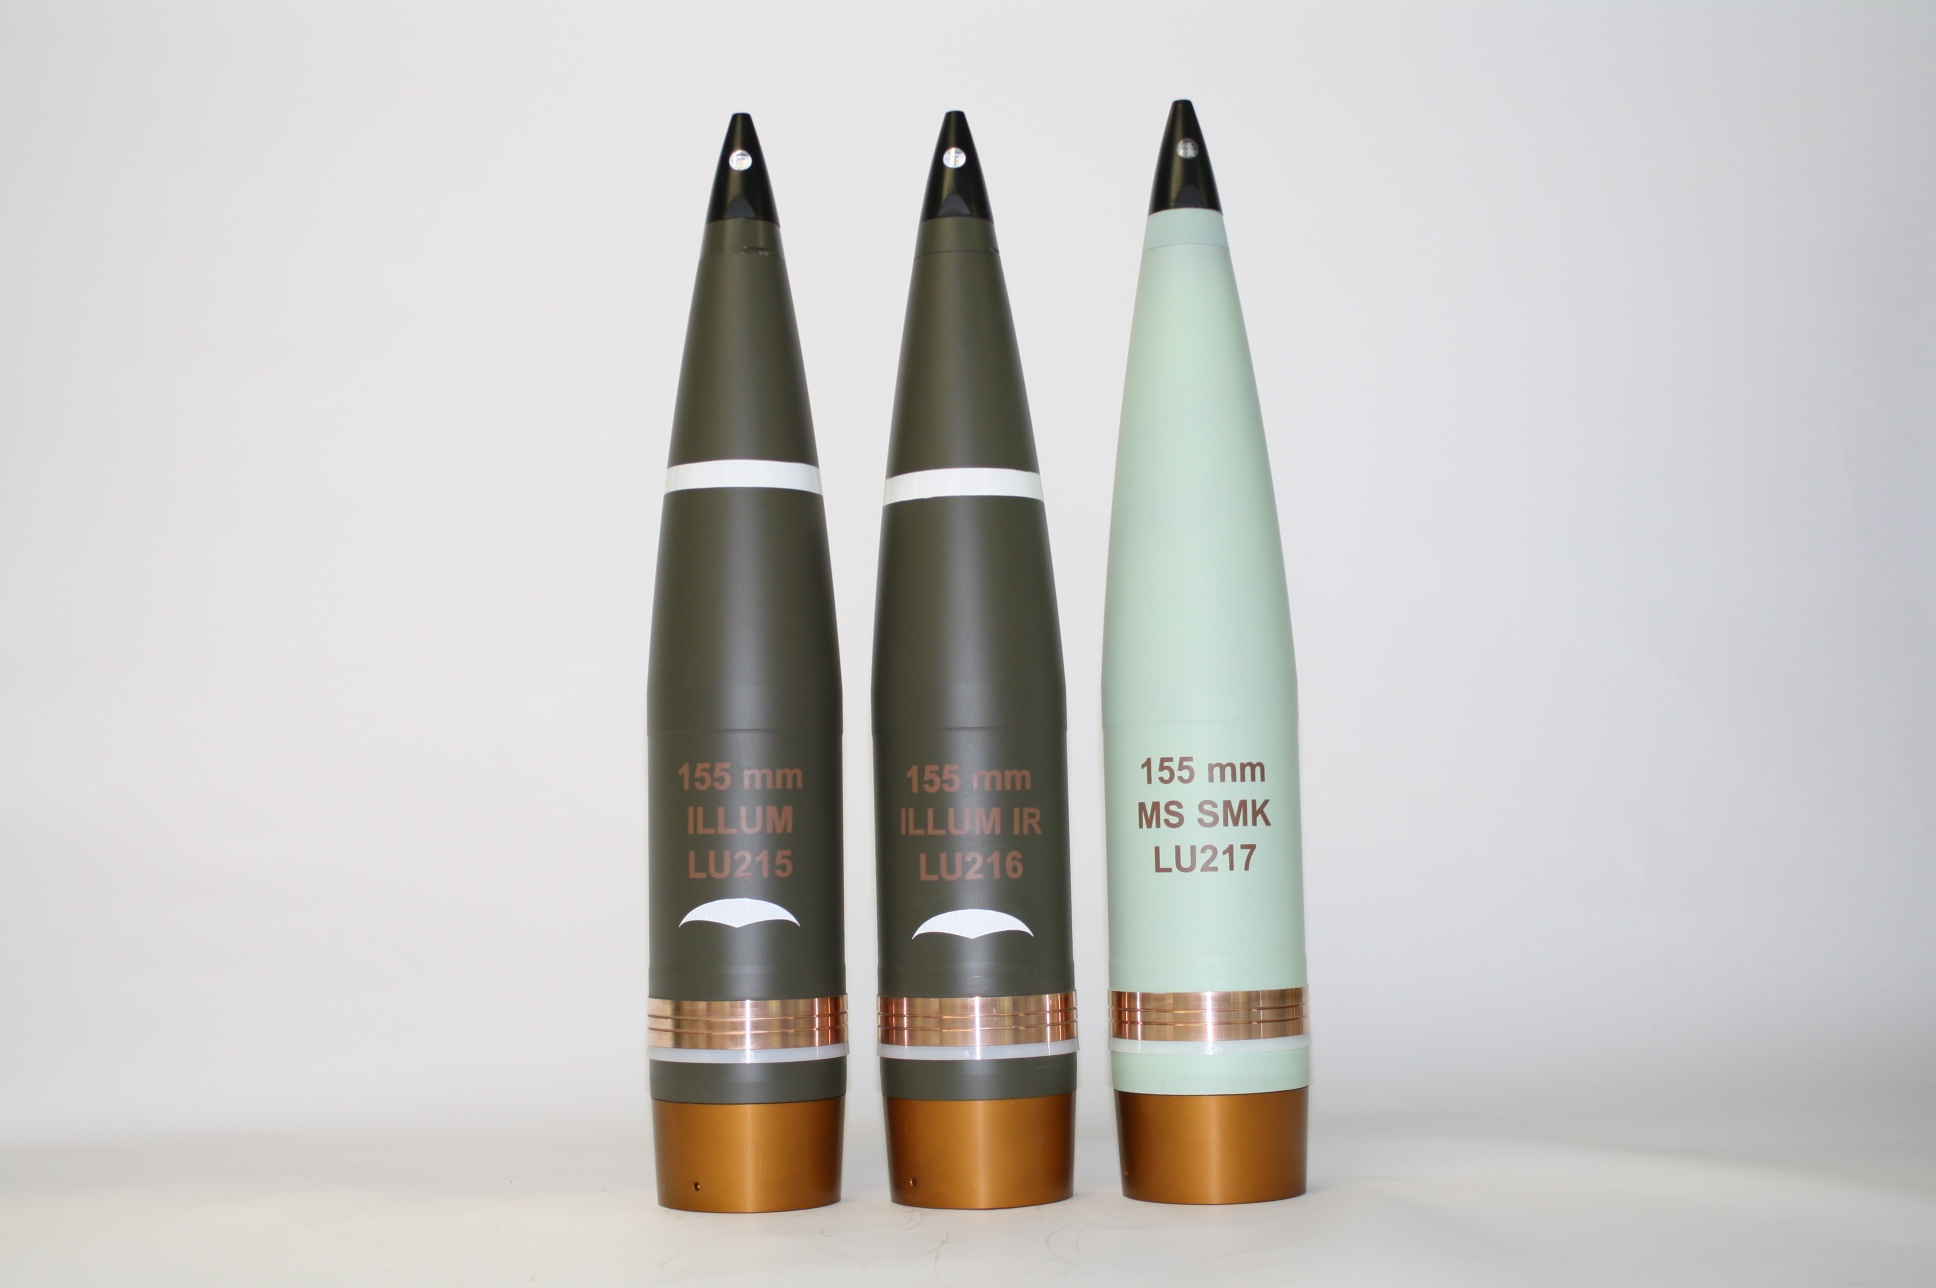  Nexter 155mm ammunitions: flare (LU 215), smoke (LU 217) and anti-tank (BONUS) rounds